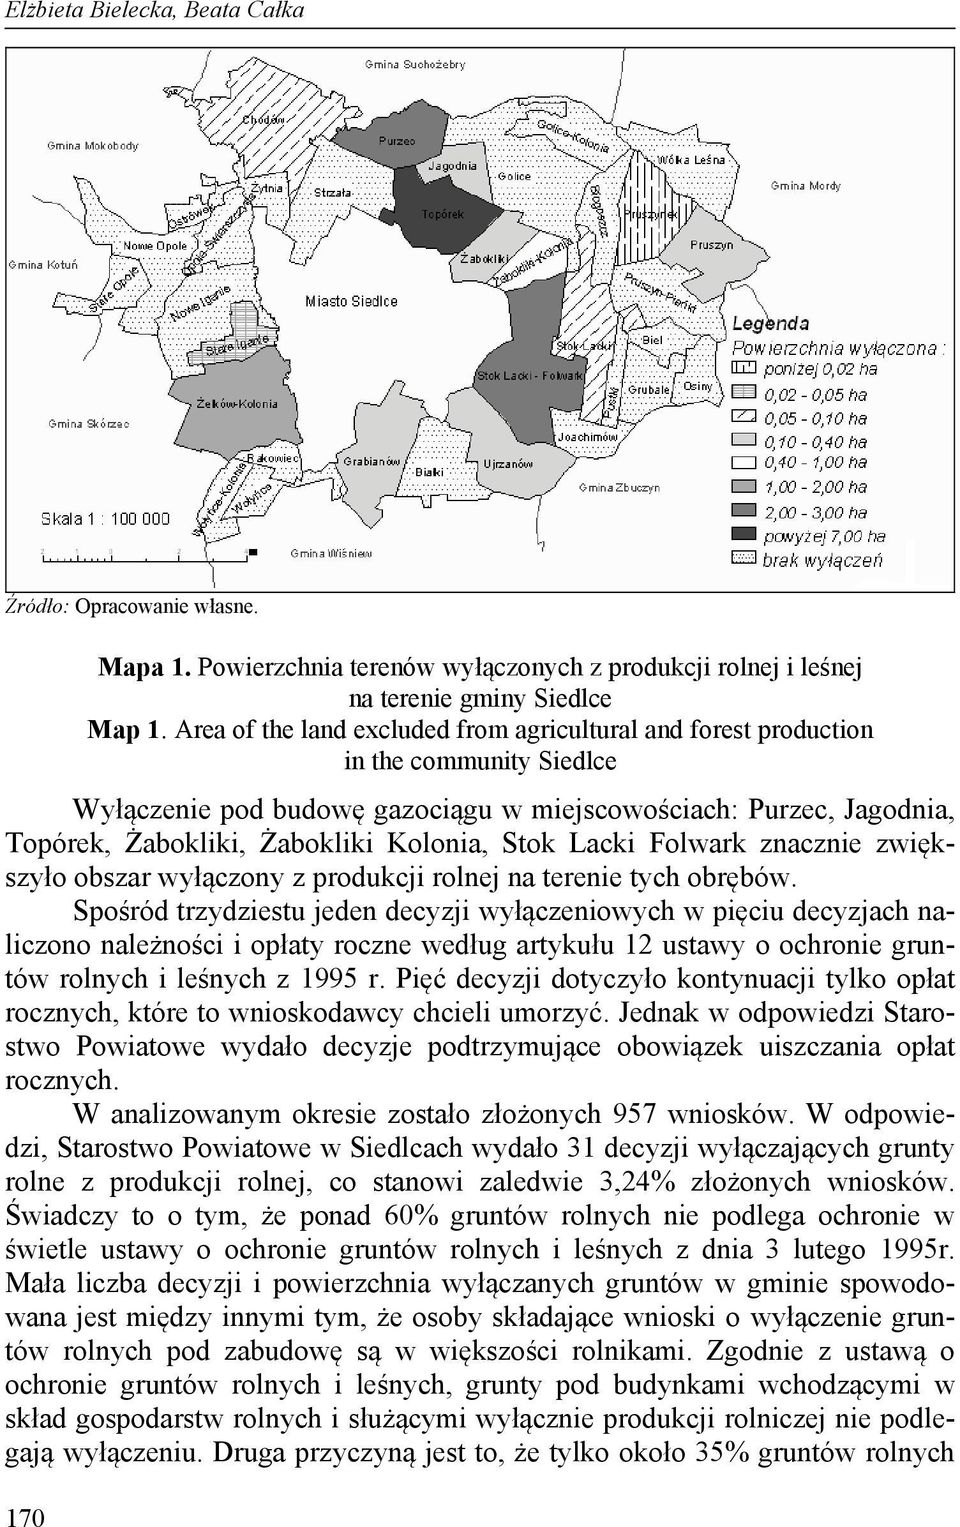 Stok Lacki Folwark znacznie zwiększyło obszar wyłączony z produkcji rolnej na terenie tych obrębów.